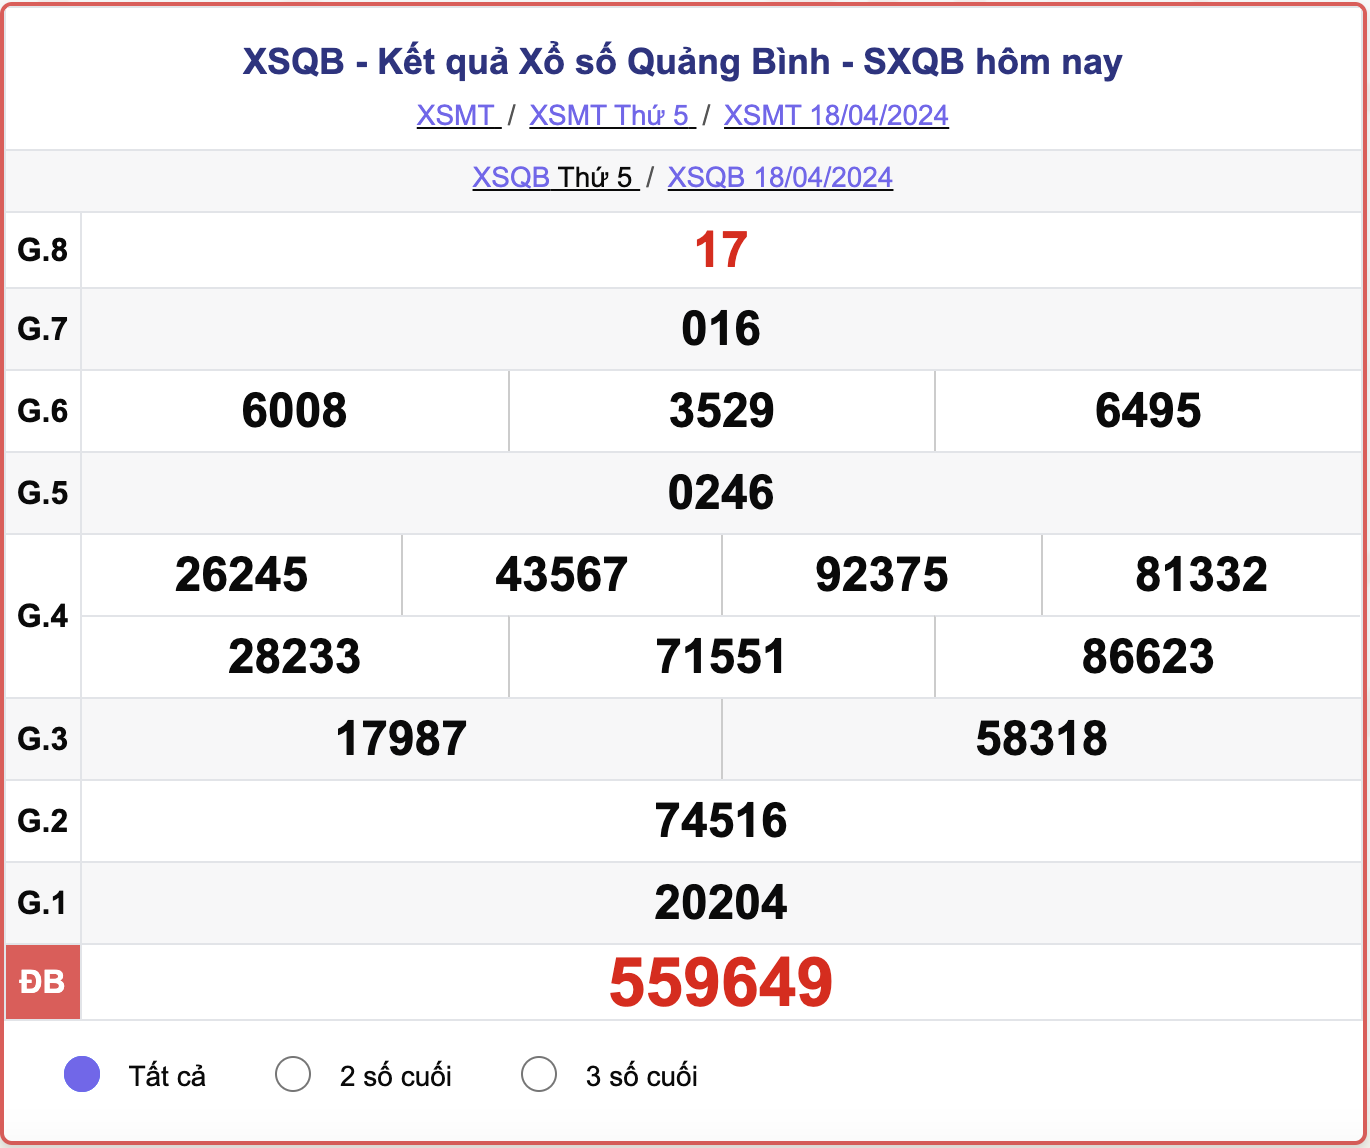 XSQB thứ 5, kết quả xổ số Quảng Bình ngày 18/4/2024.